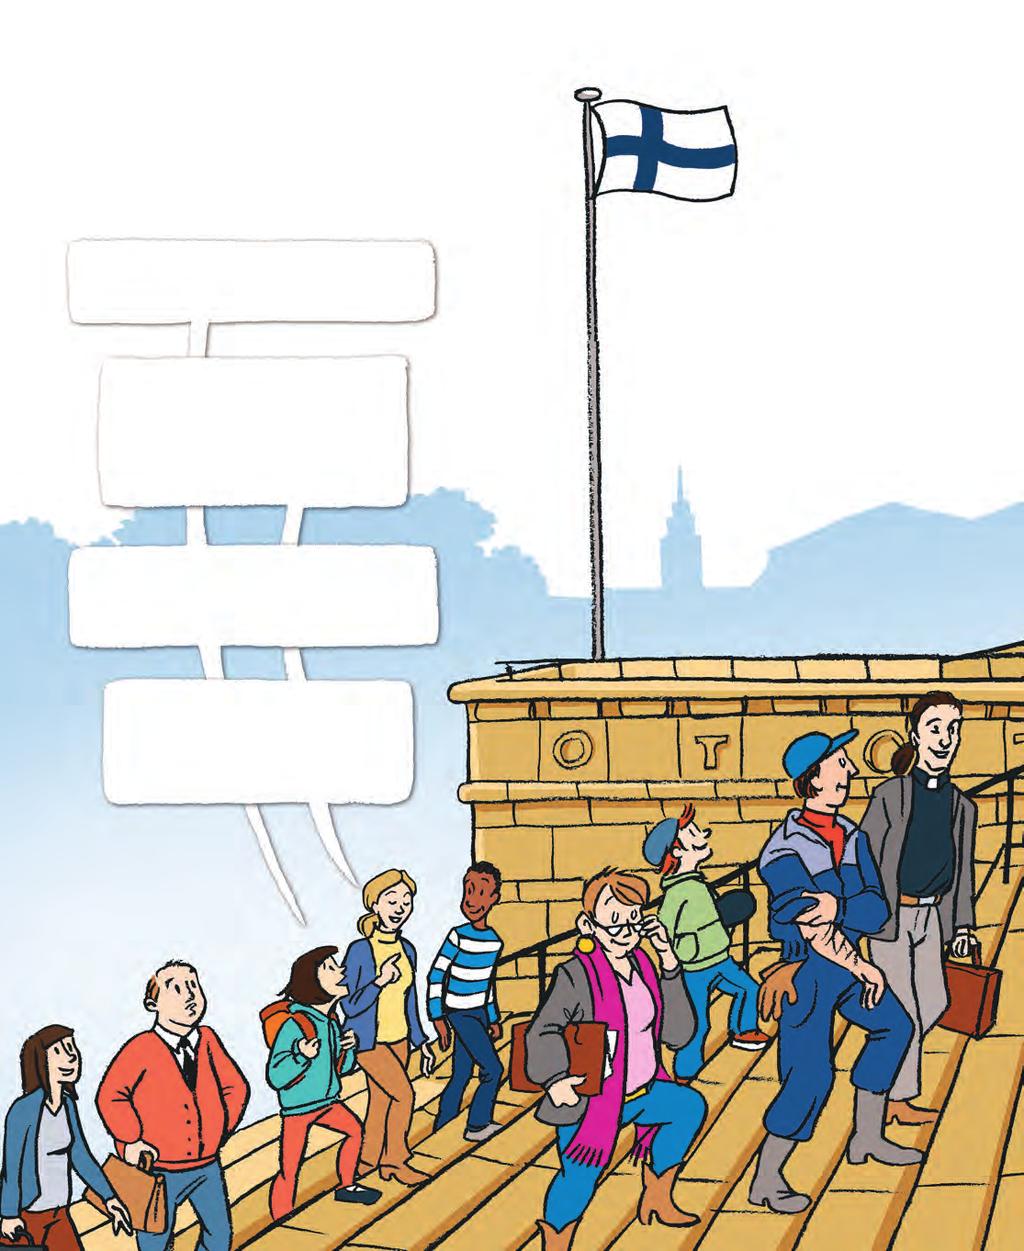 Vart är alla på väg? Till riksdagen? Jo, till riksdagen väljs 200 riksdagsledamöter från hela Finland.